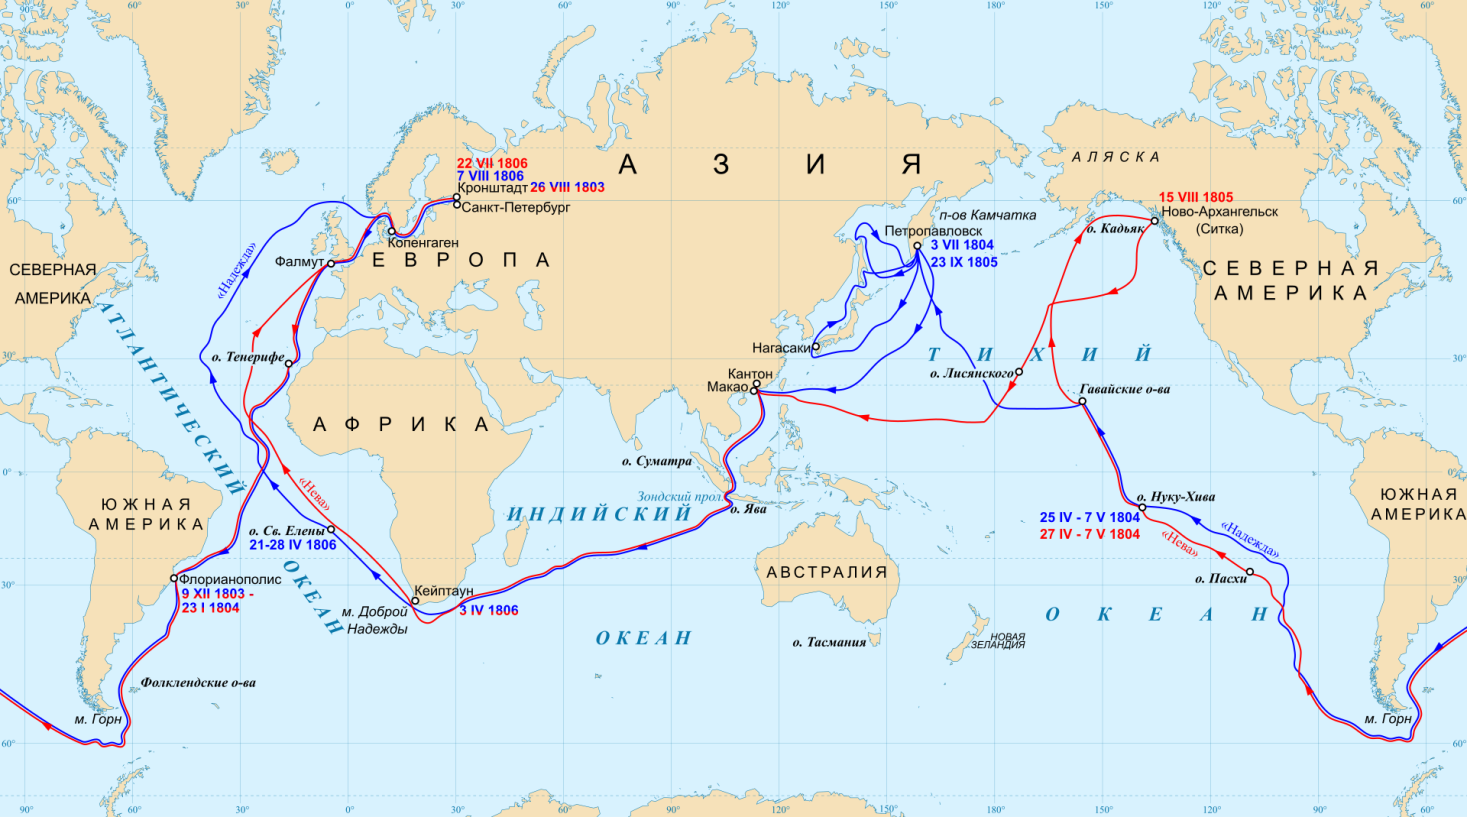 Как называется маршрут семейного путешествия. Плавание Крузенштерна и Лисянского 1803-1806. Маршрут плавания Крузенштерна и Лисянского. Плавание Крузенштерна и Лисянского.